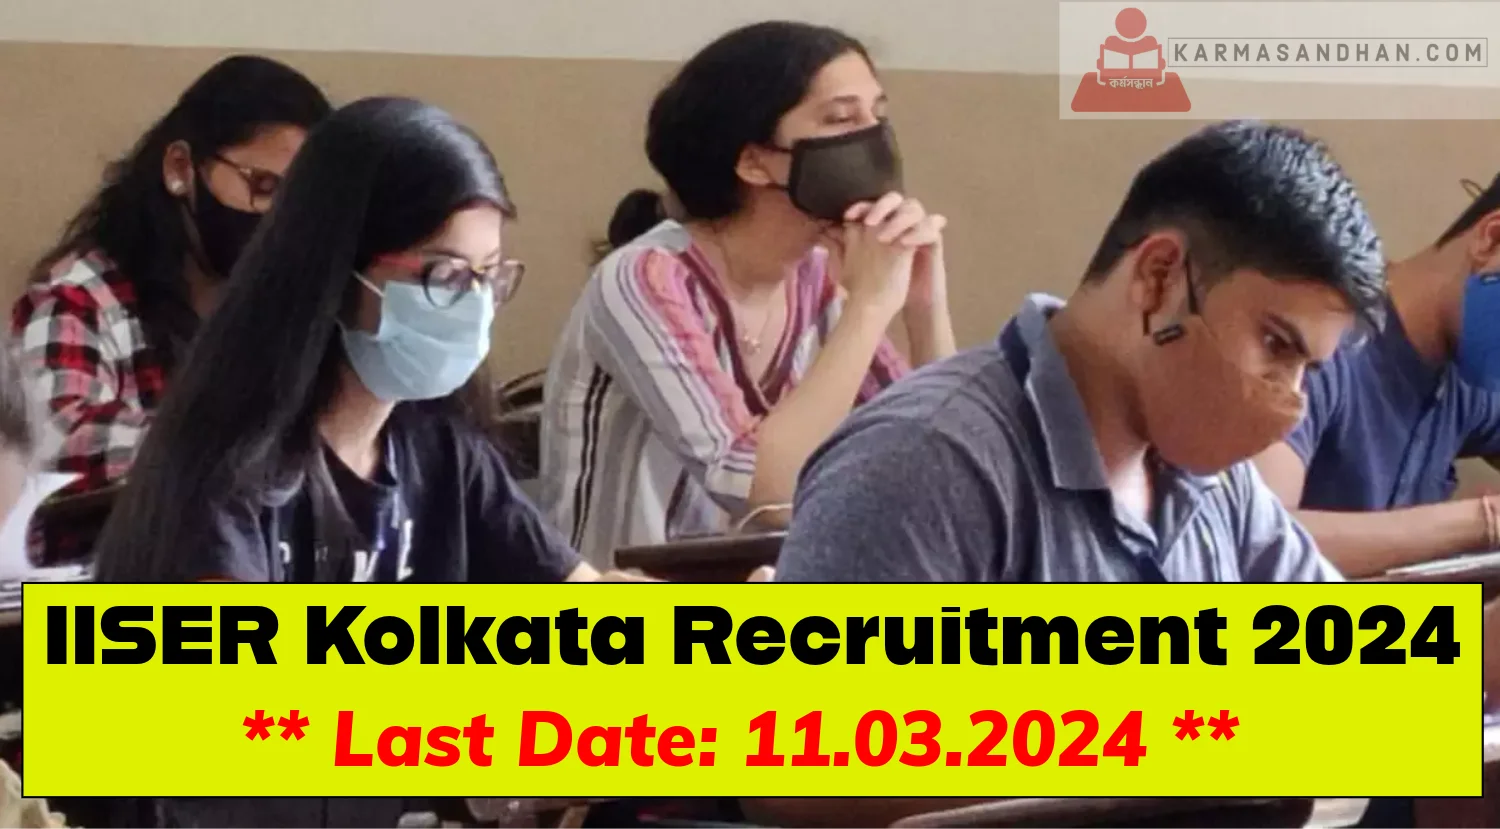 IISER Kolkata Recruitment 2024